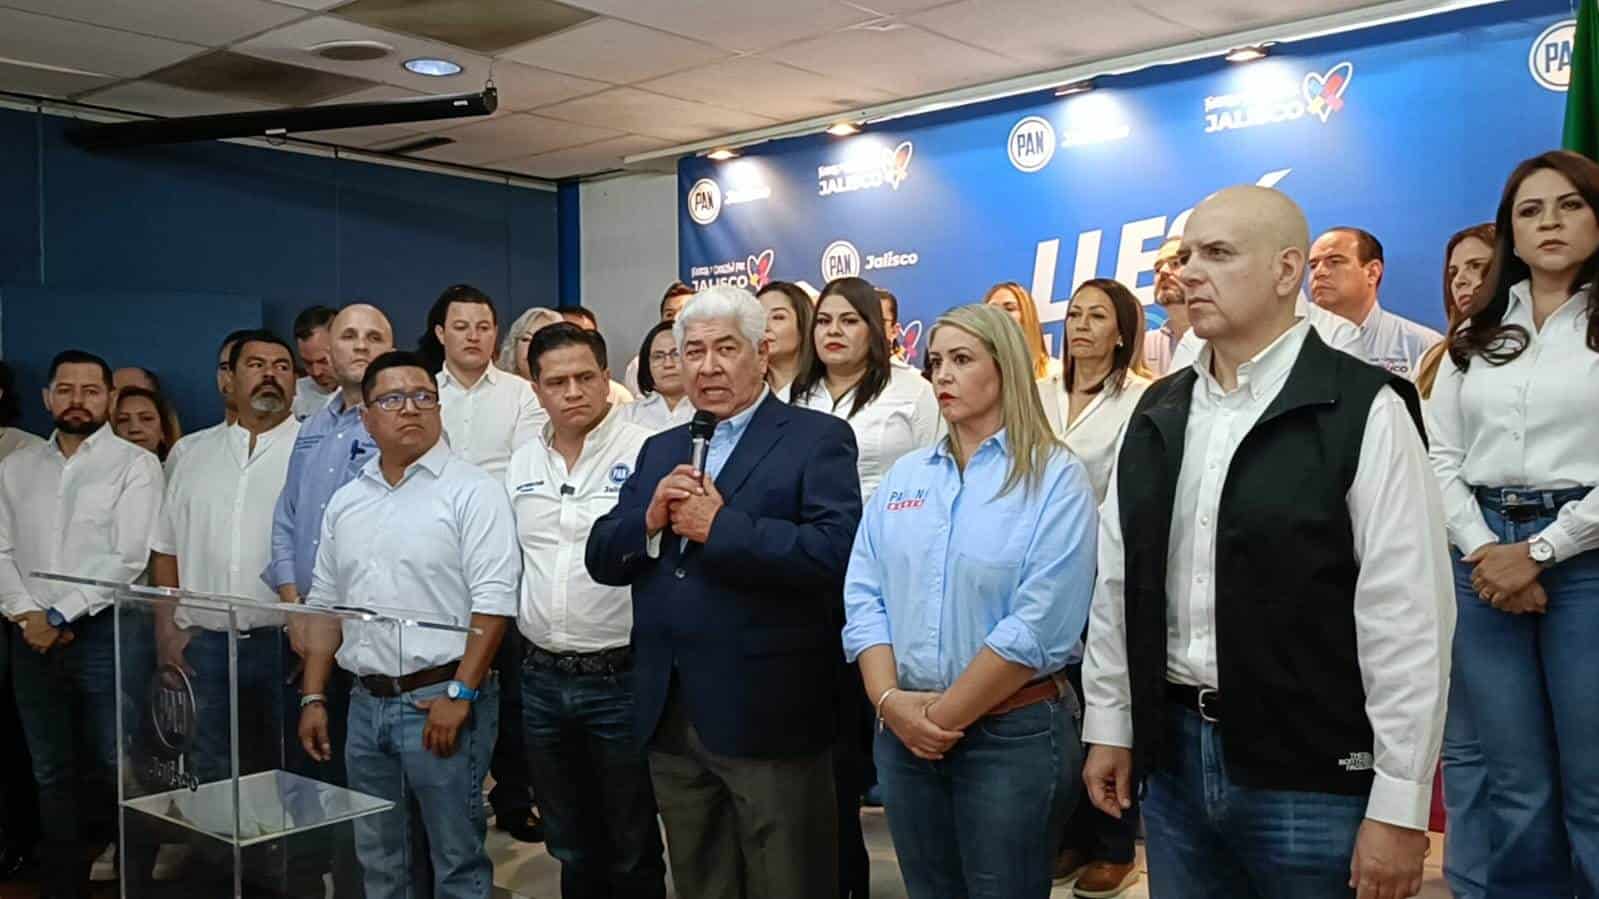 Fortalecer el federalismo y a Jalisco, propuesta son las propuestas de campaña del candidato al Senado de la República Francisco Ramírez Acuña